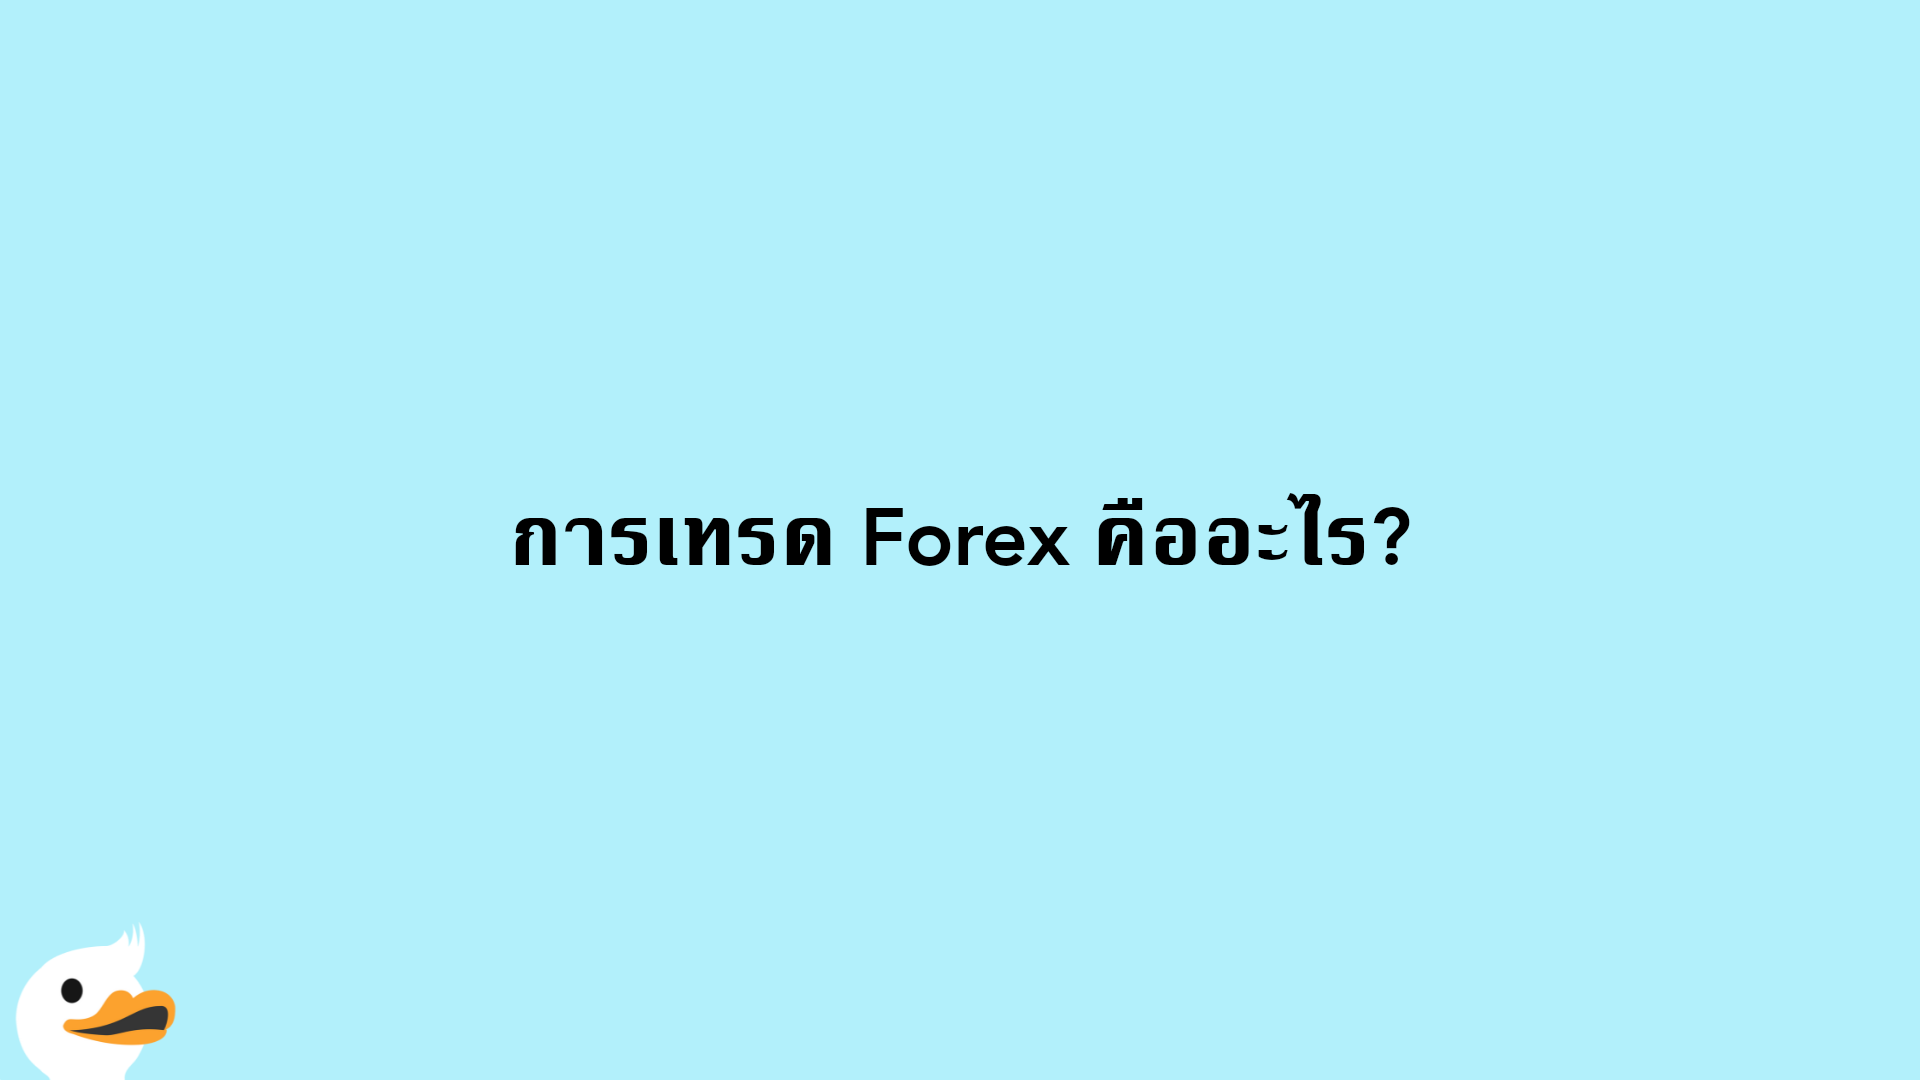 การเทรด Forex คืออะไร?